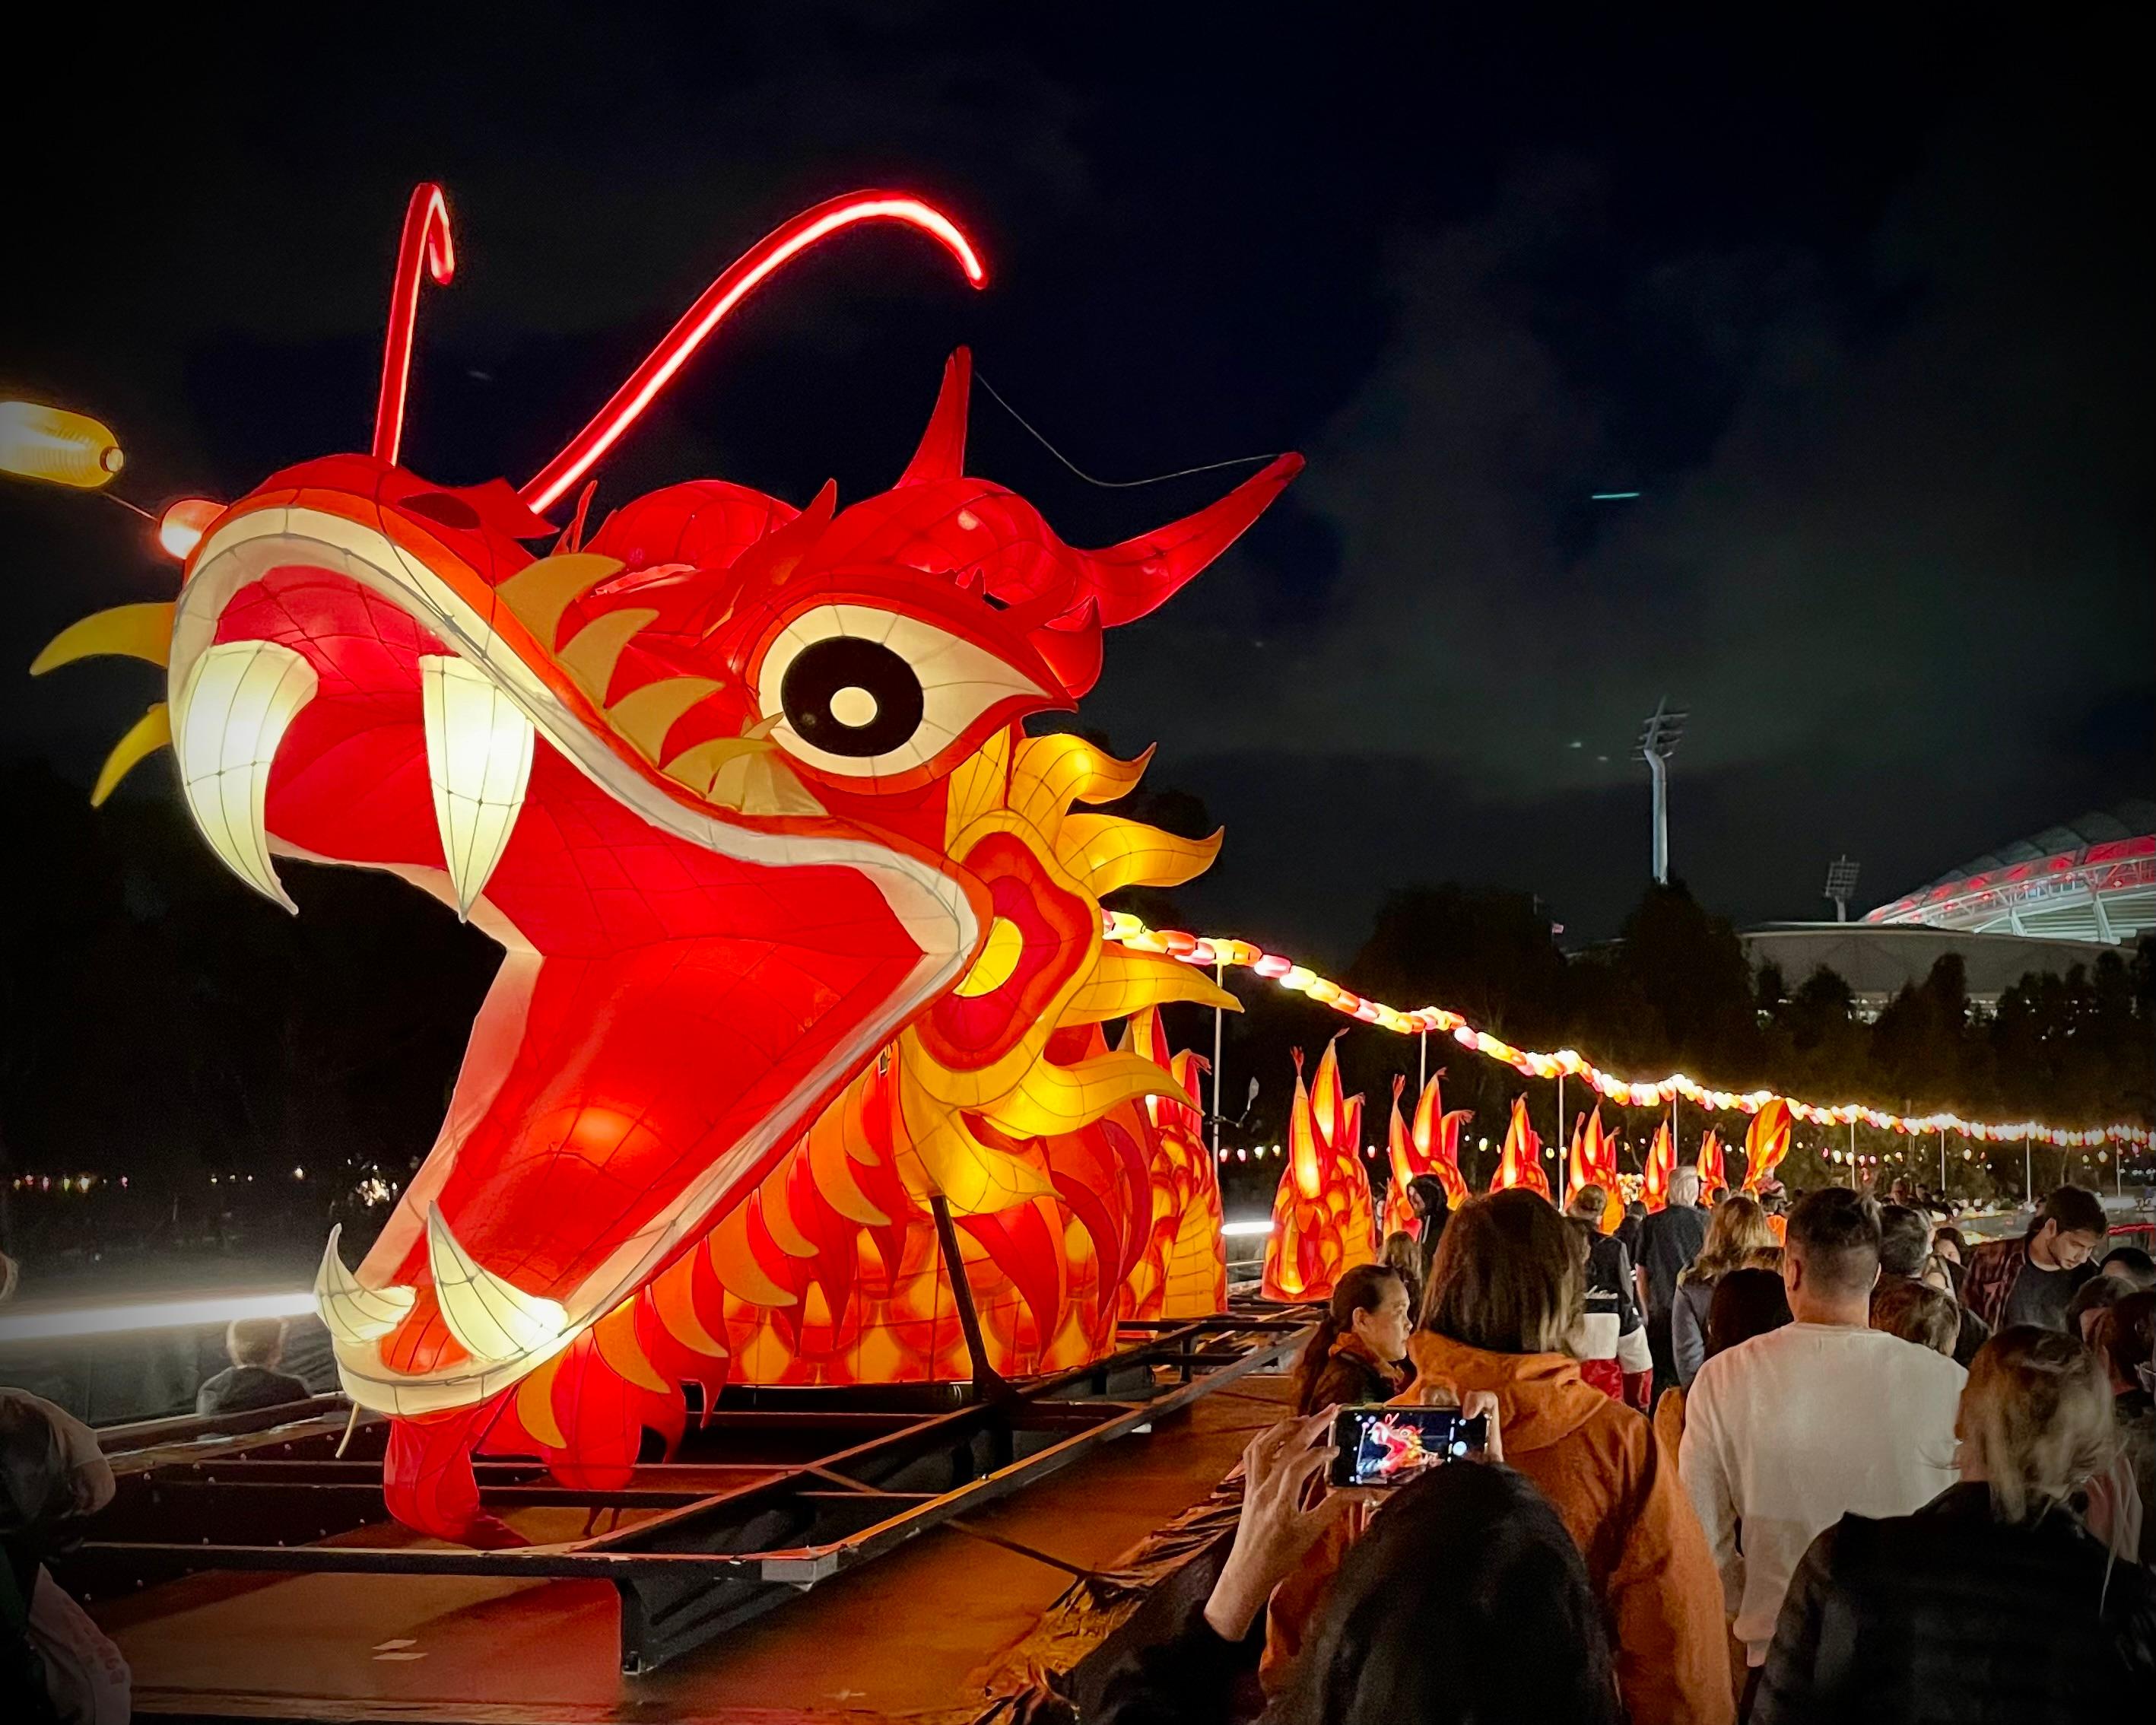 一條40米長璀璨奪目的香港飛龍綵燈在十月十九日至二十二日舉行的澳亞藝術節綵燈會中，照亮澳洲阿德萊德河畔，向澳洲市民展示香港作為中外文化藝術交流中心的活力。